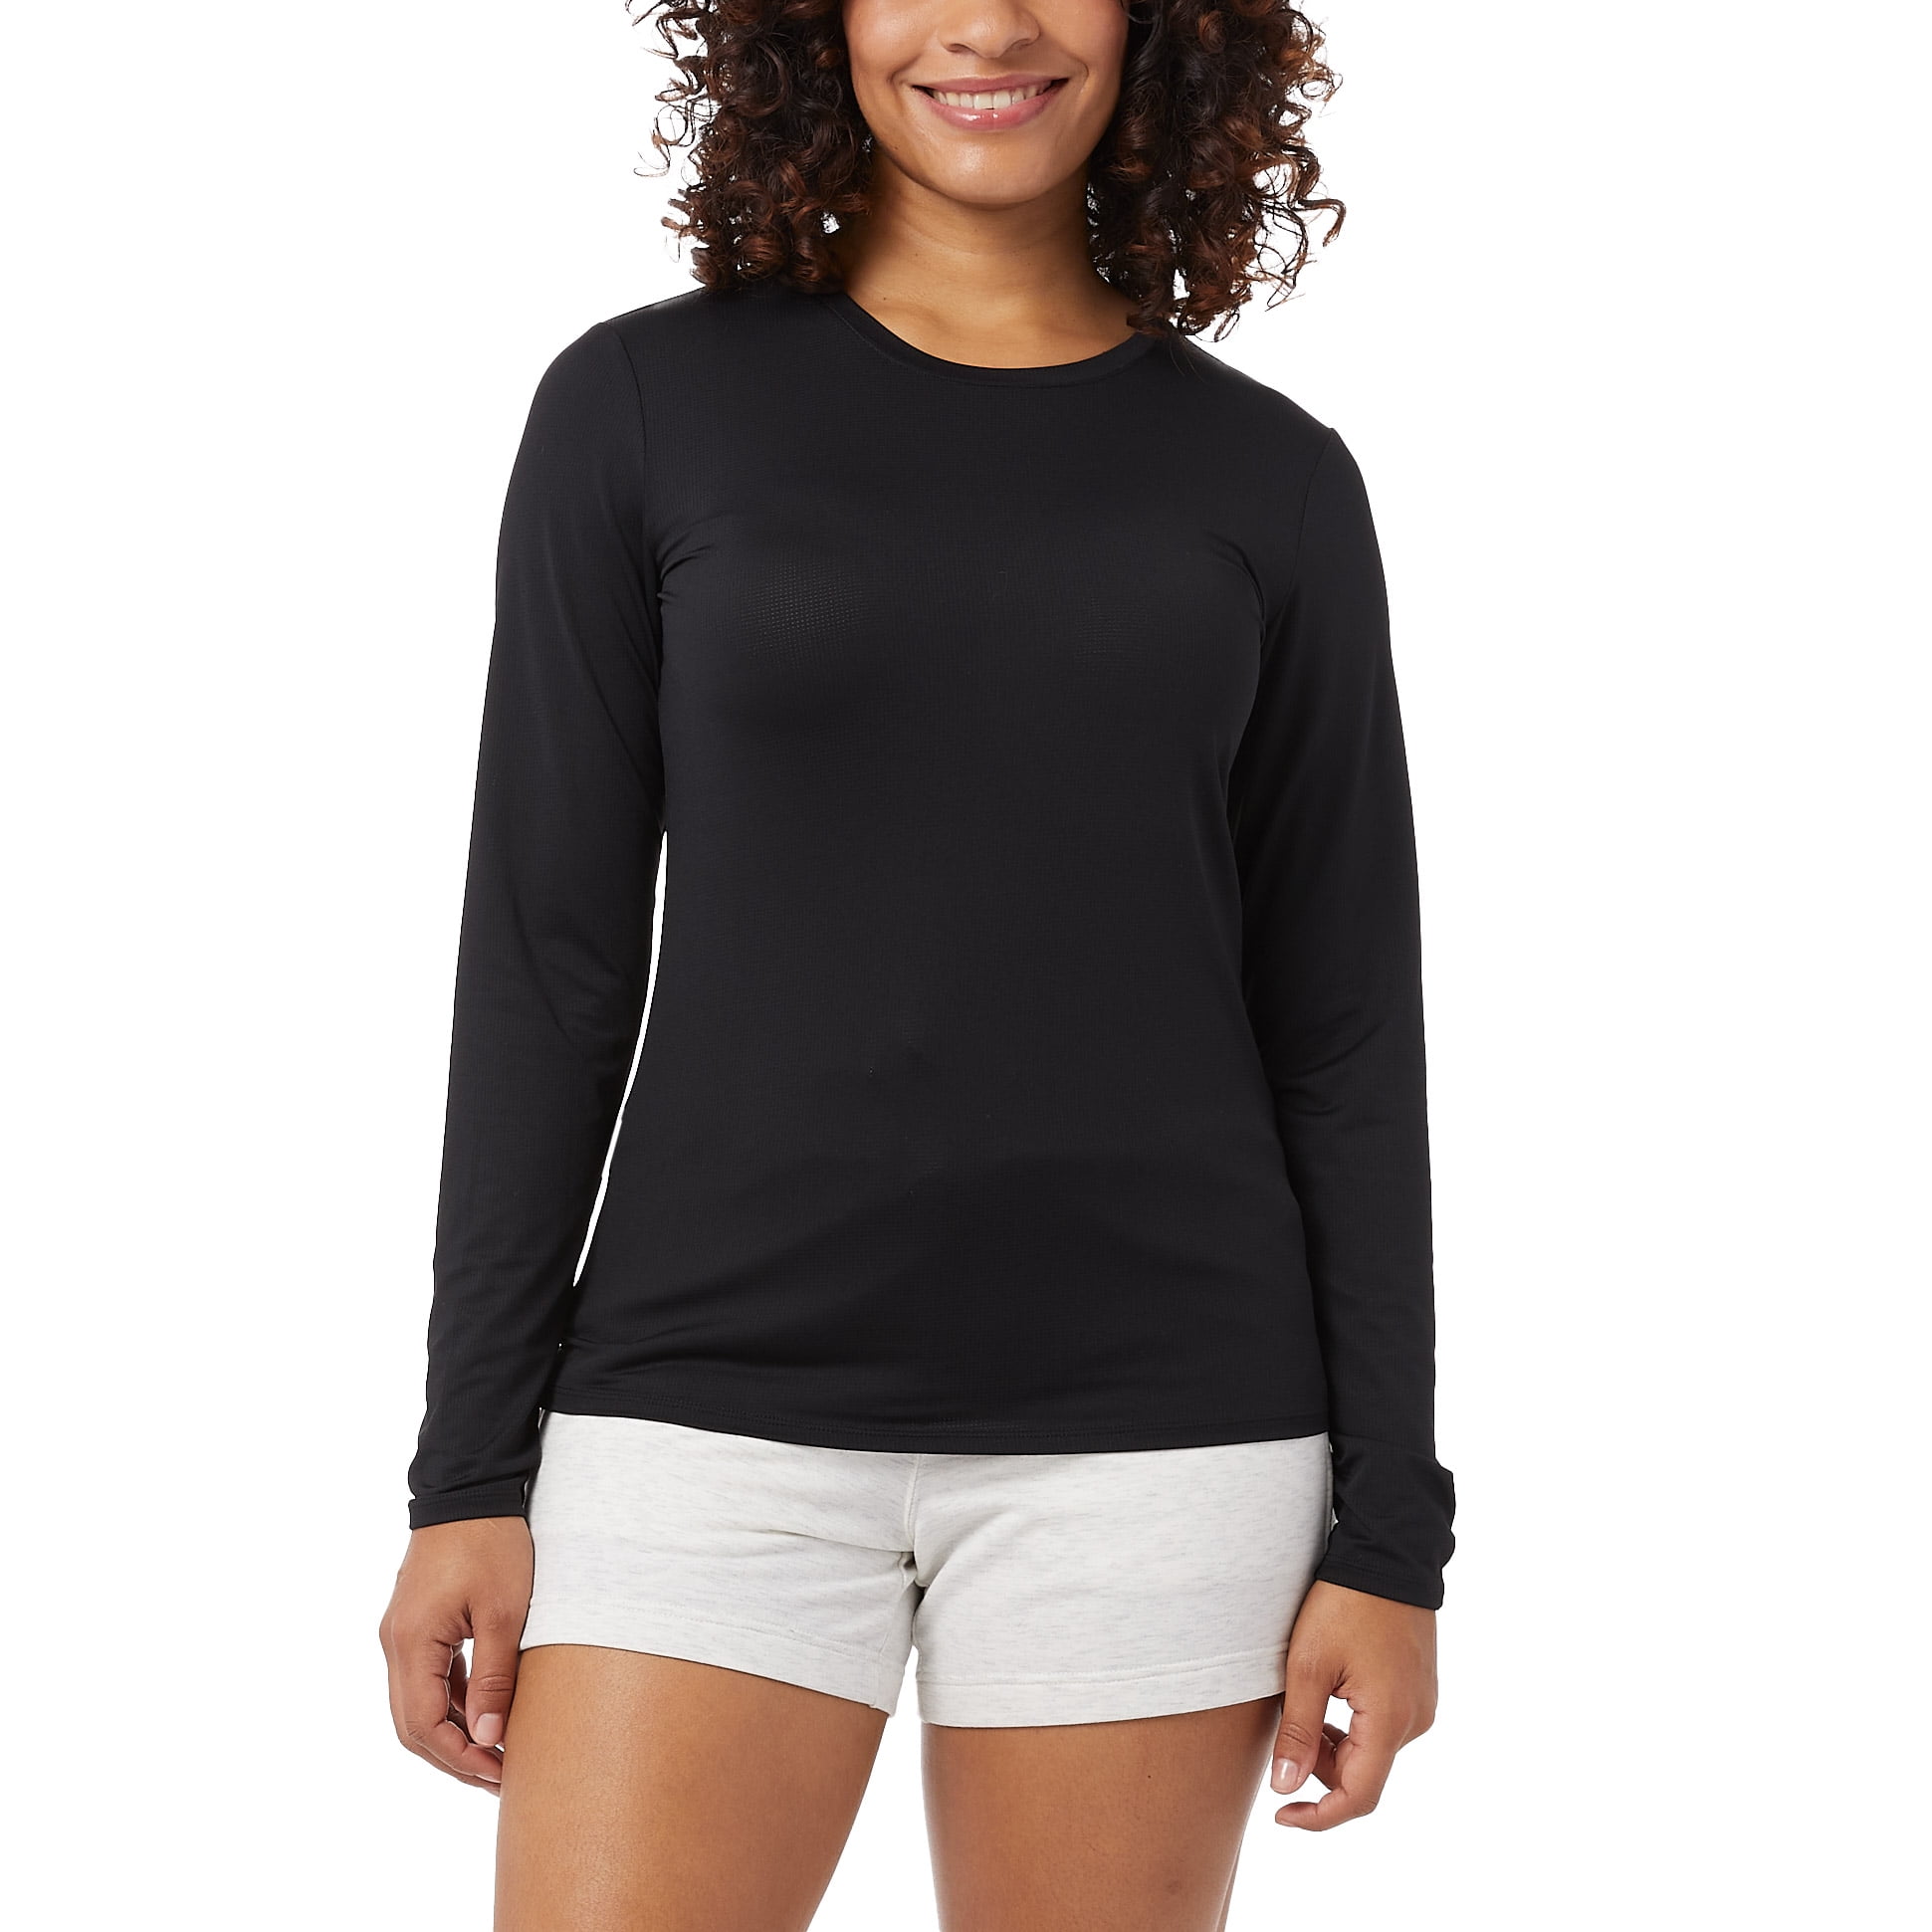 tvetydigheden At lyve sammentrækning Women's Premium Slim Fit Long Sleeve T-Shirt Spreadshirt